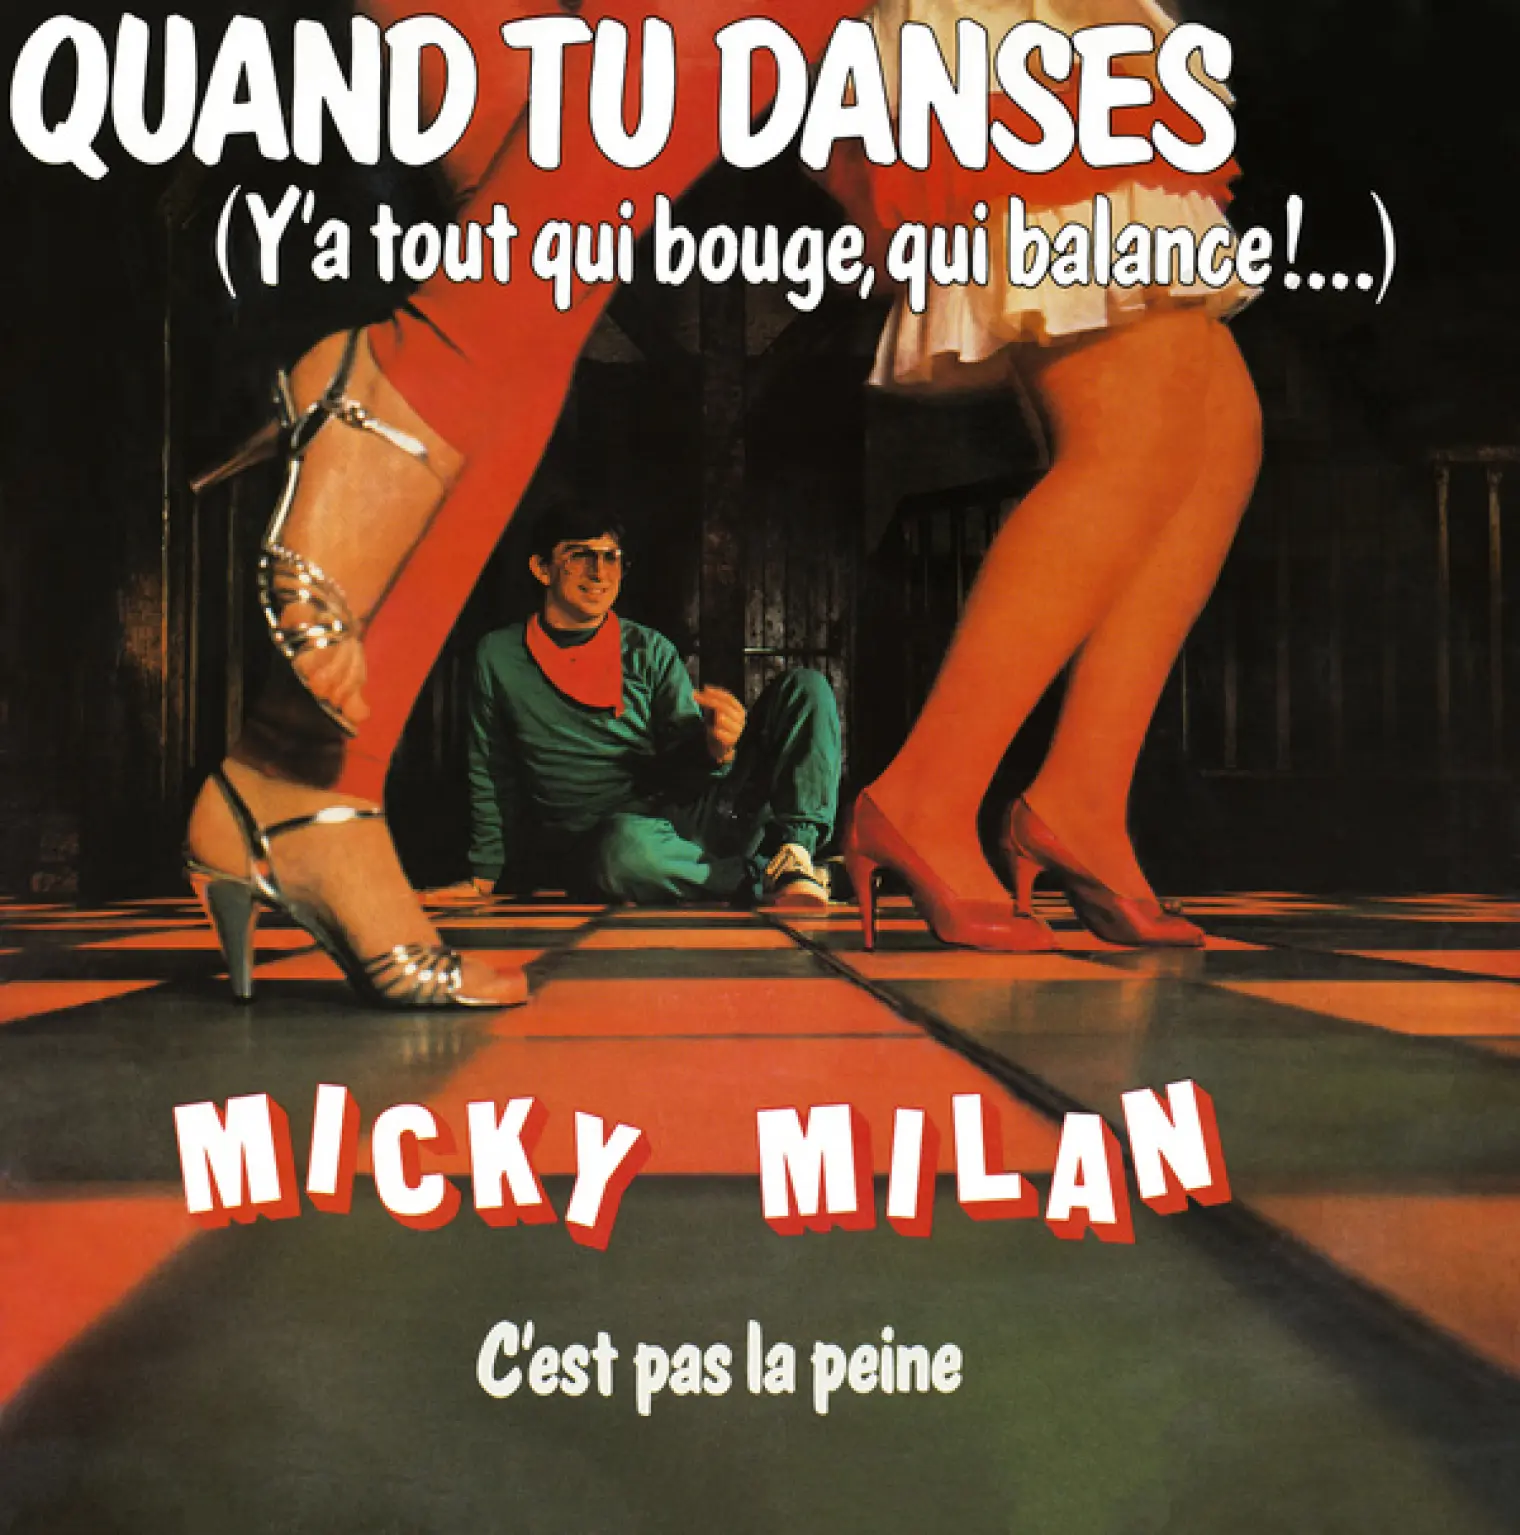 Quand tu danses - C'est pas la peine -  Micky Milan 